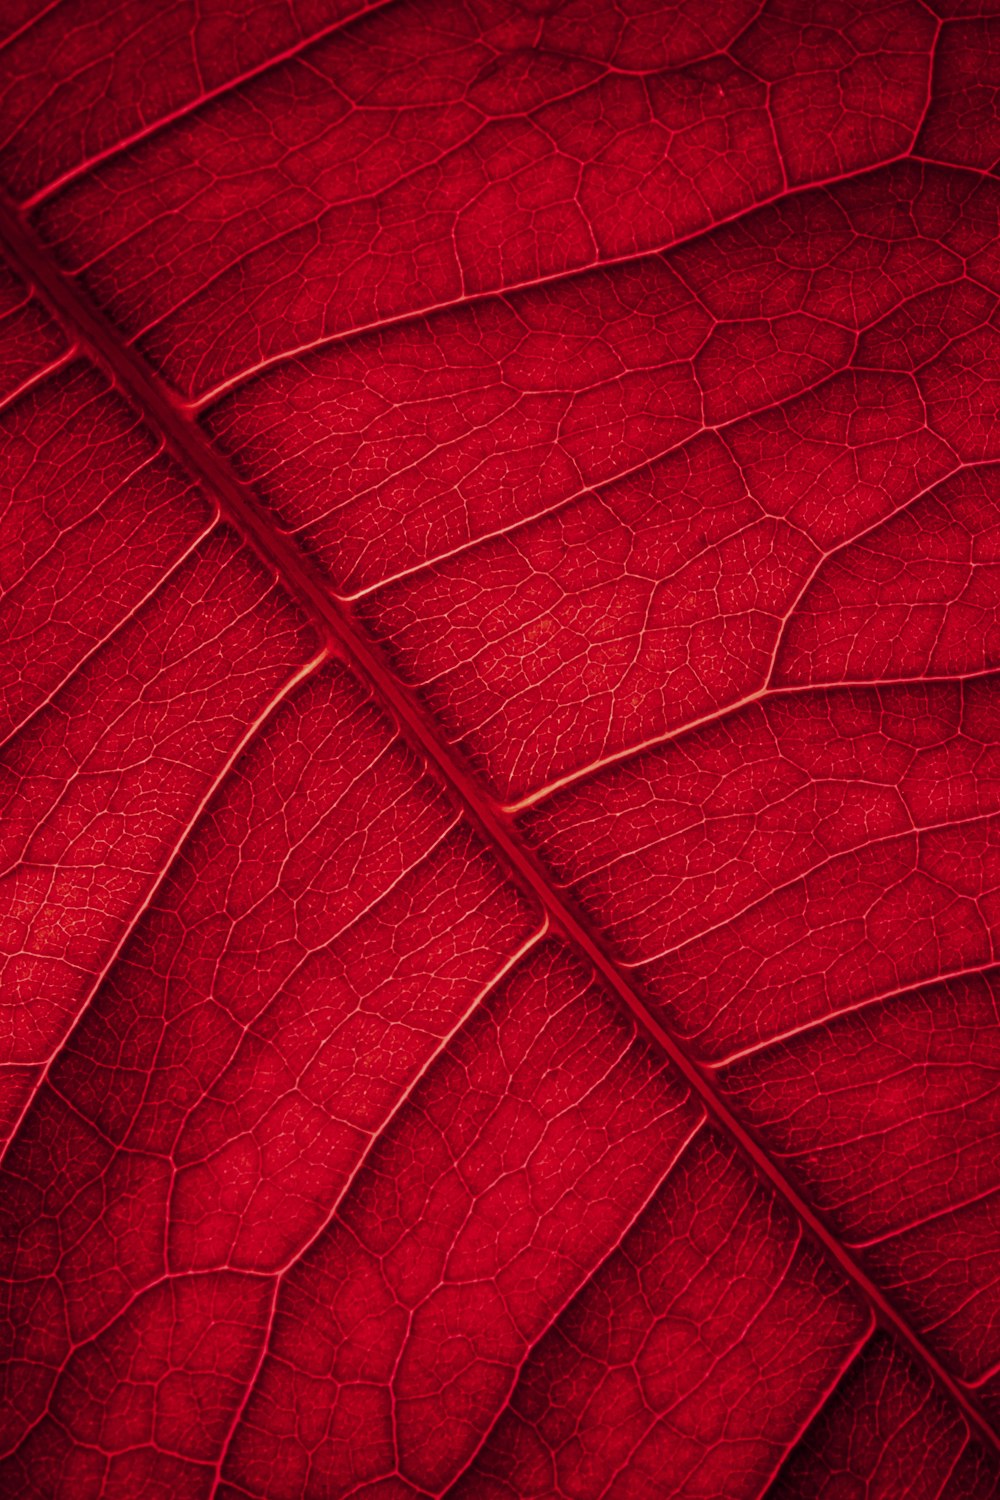 クローズアップ写真の赤い葉